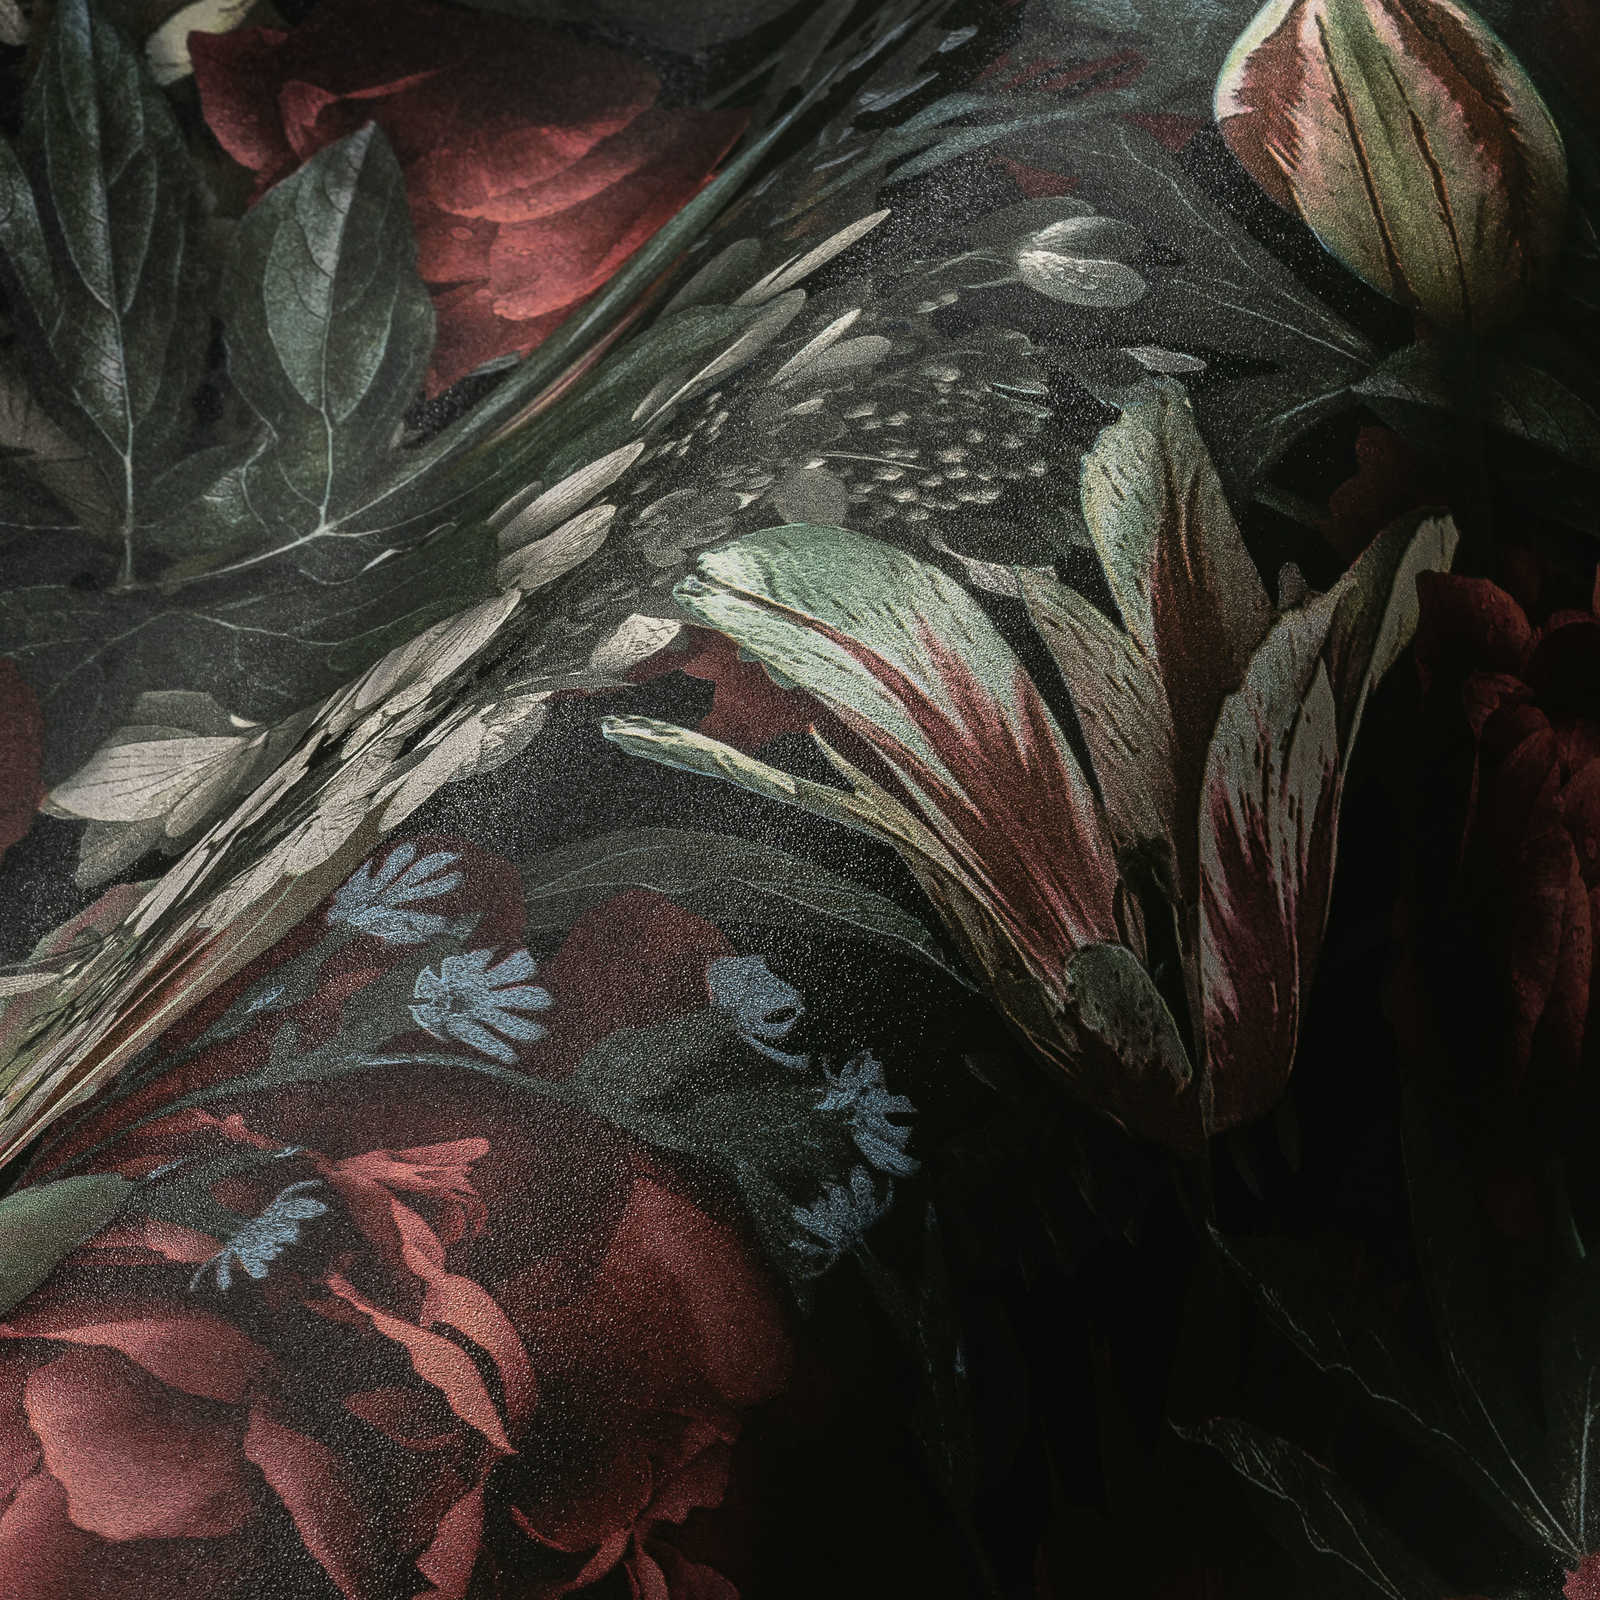             Papier peint fleuri Roses & tulipes style vintage - Vert, rouge, crème
        